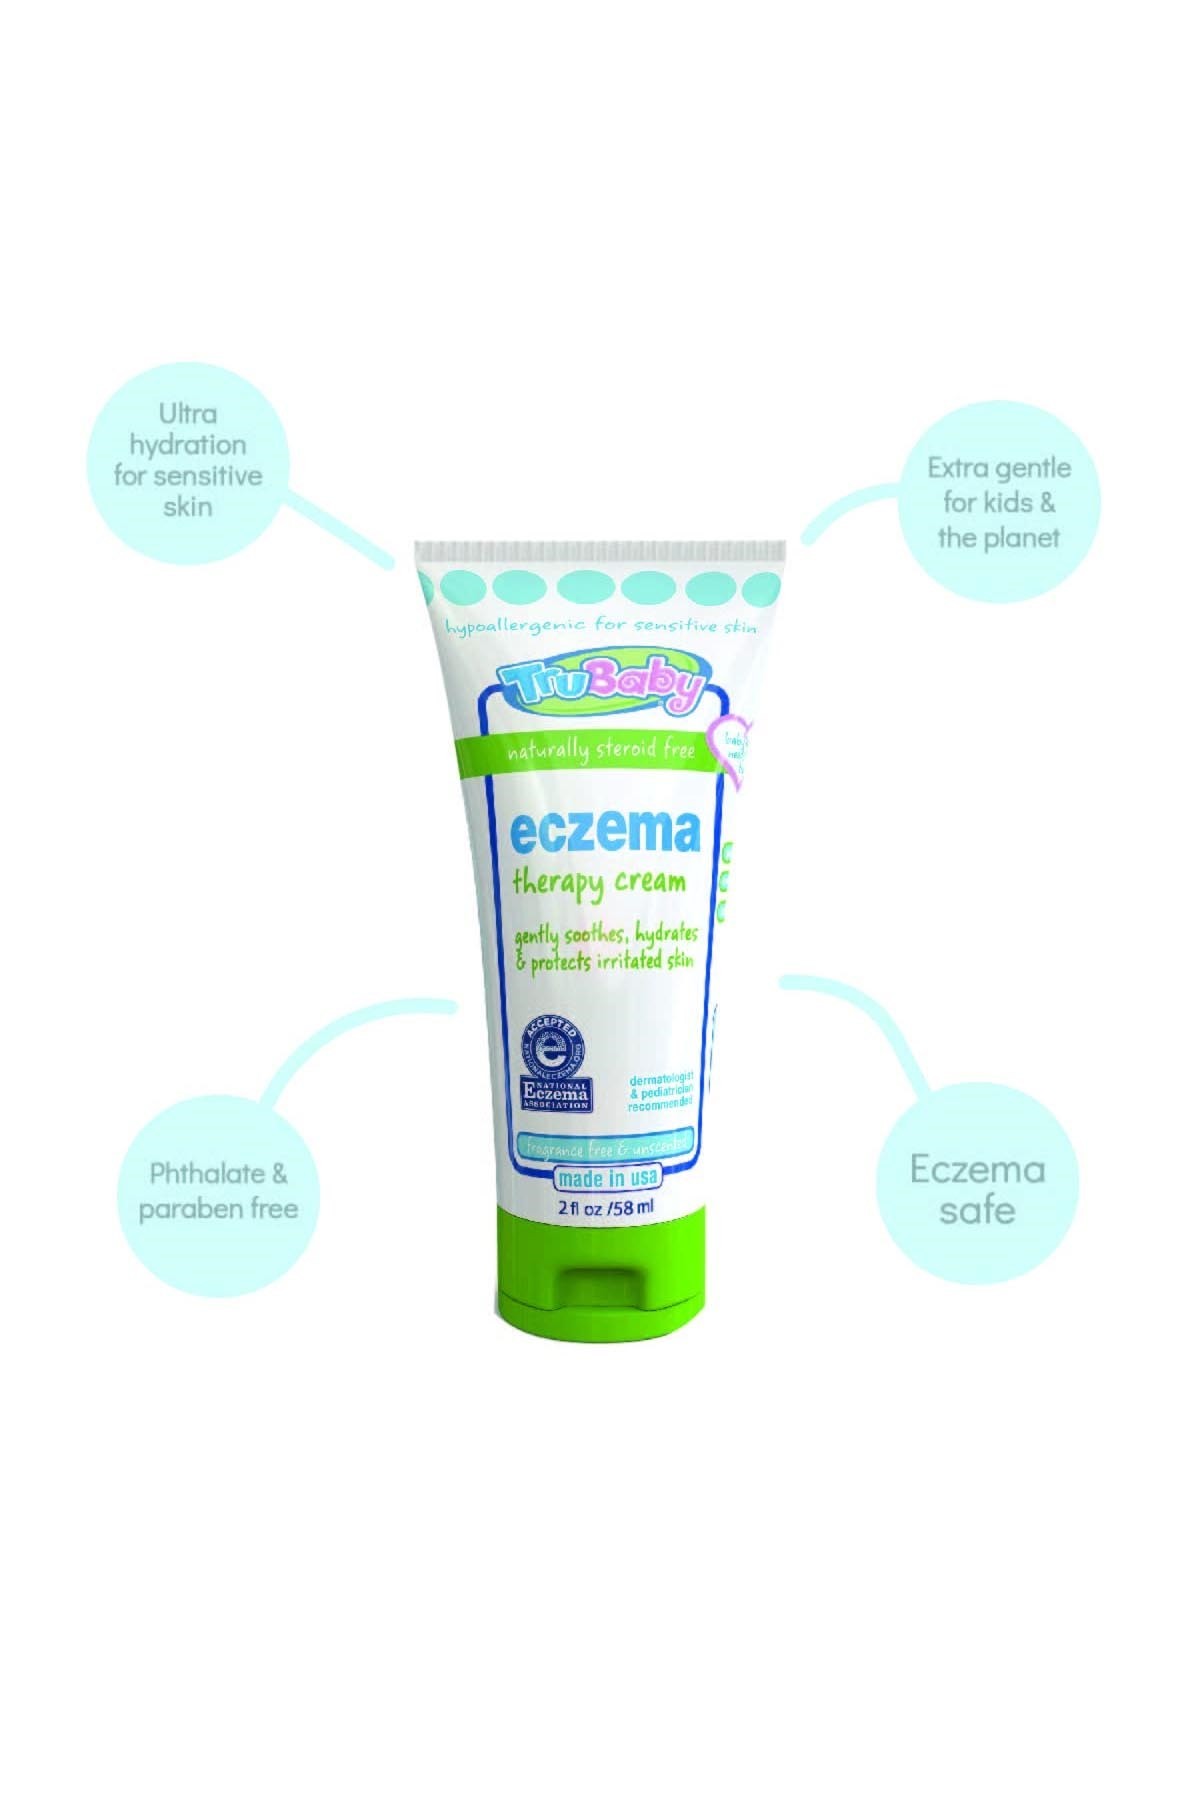 Trubaby Sensitive Egzema Therapy Cream 58 ML